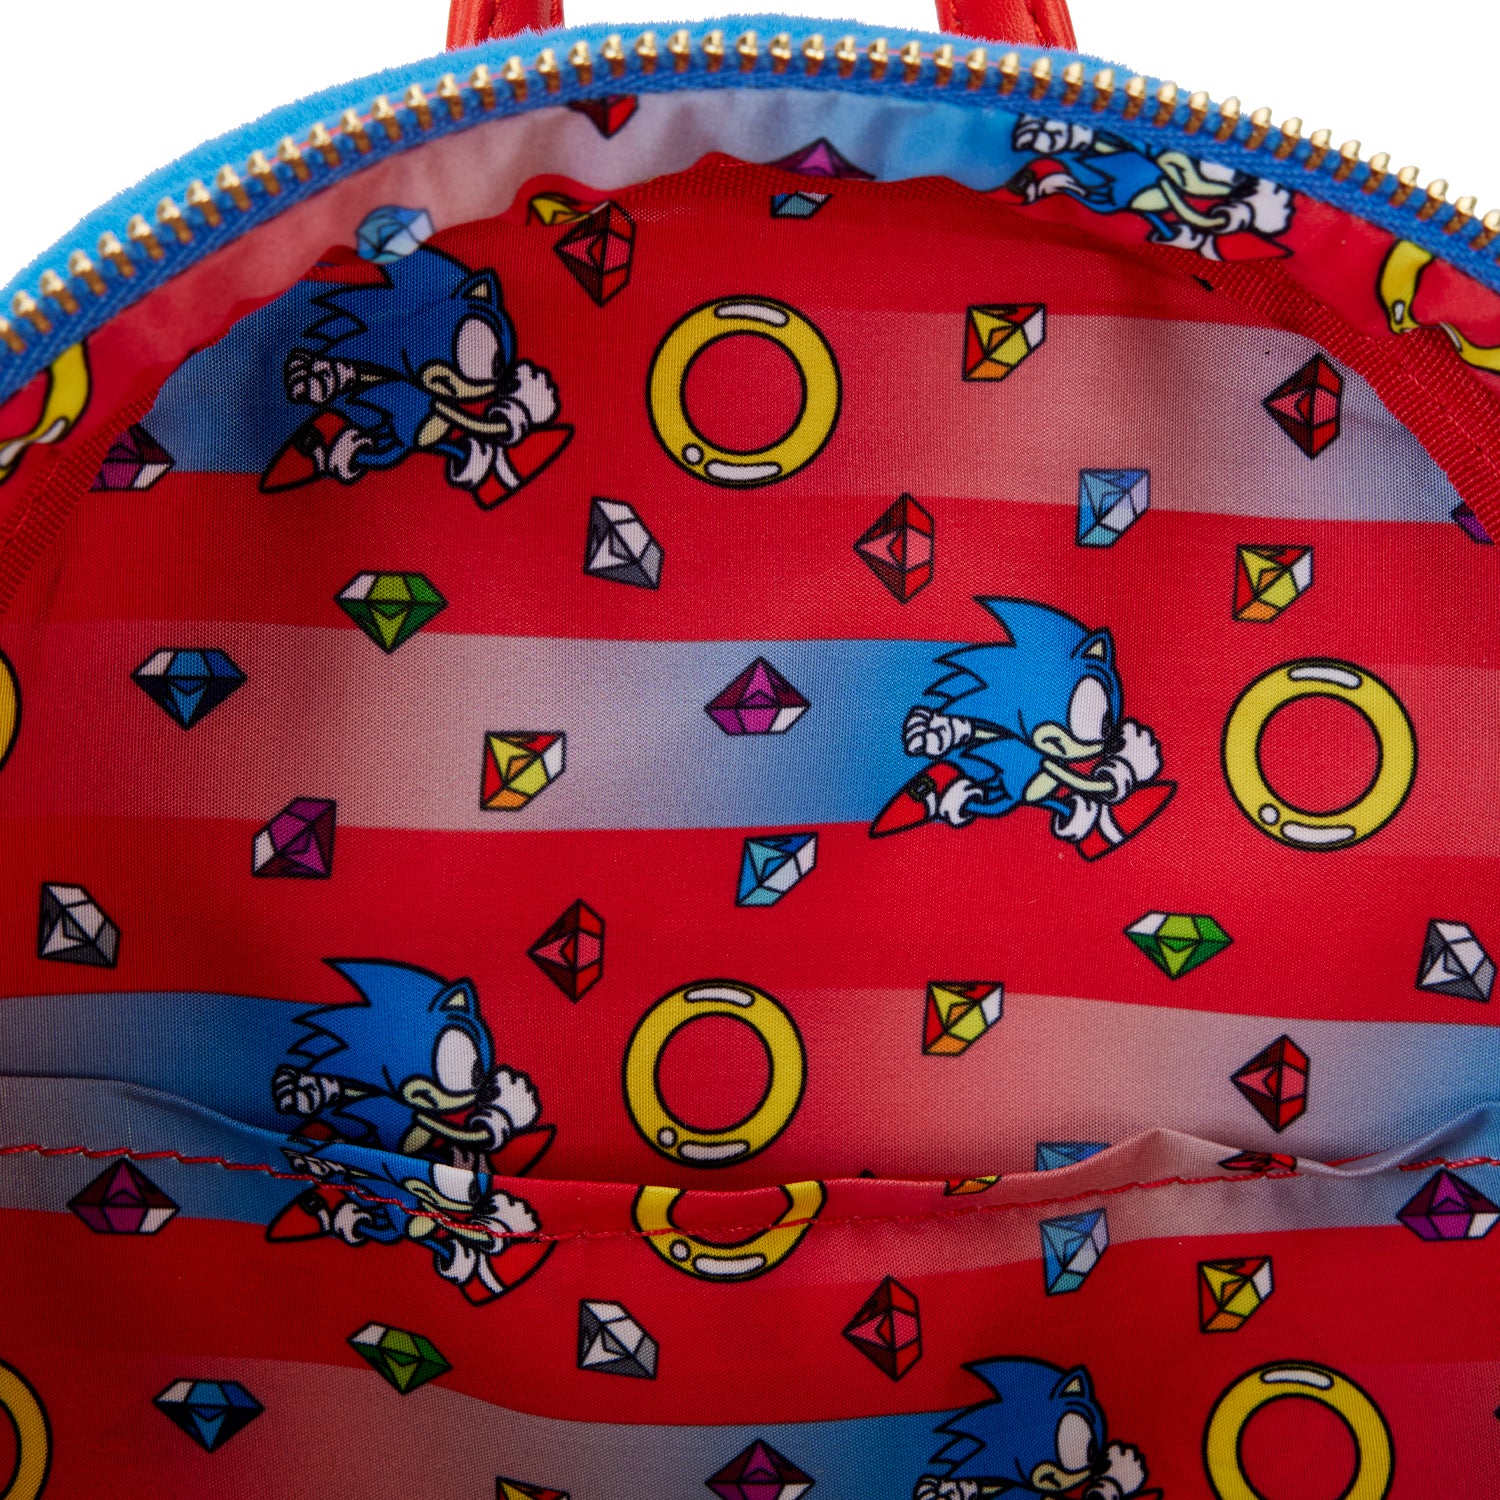 Loungefly x Sega Sonic the Hedgehog Cosplay Mini Backpack